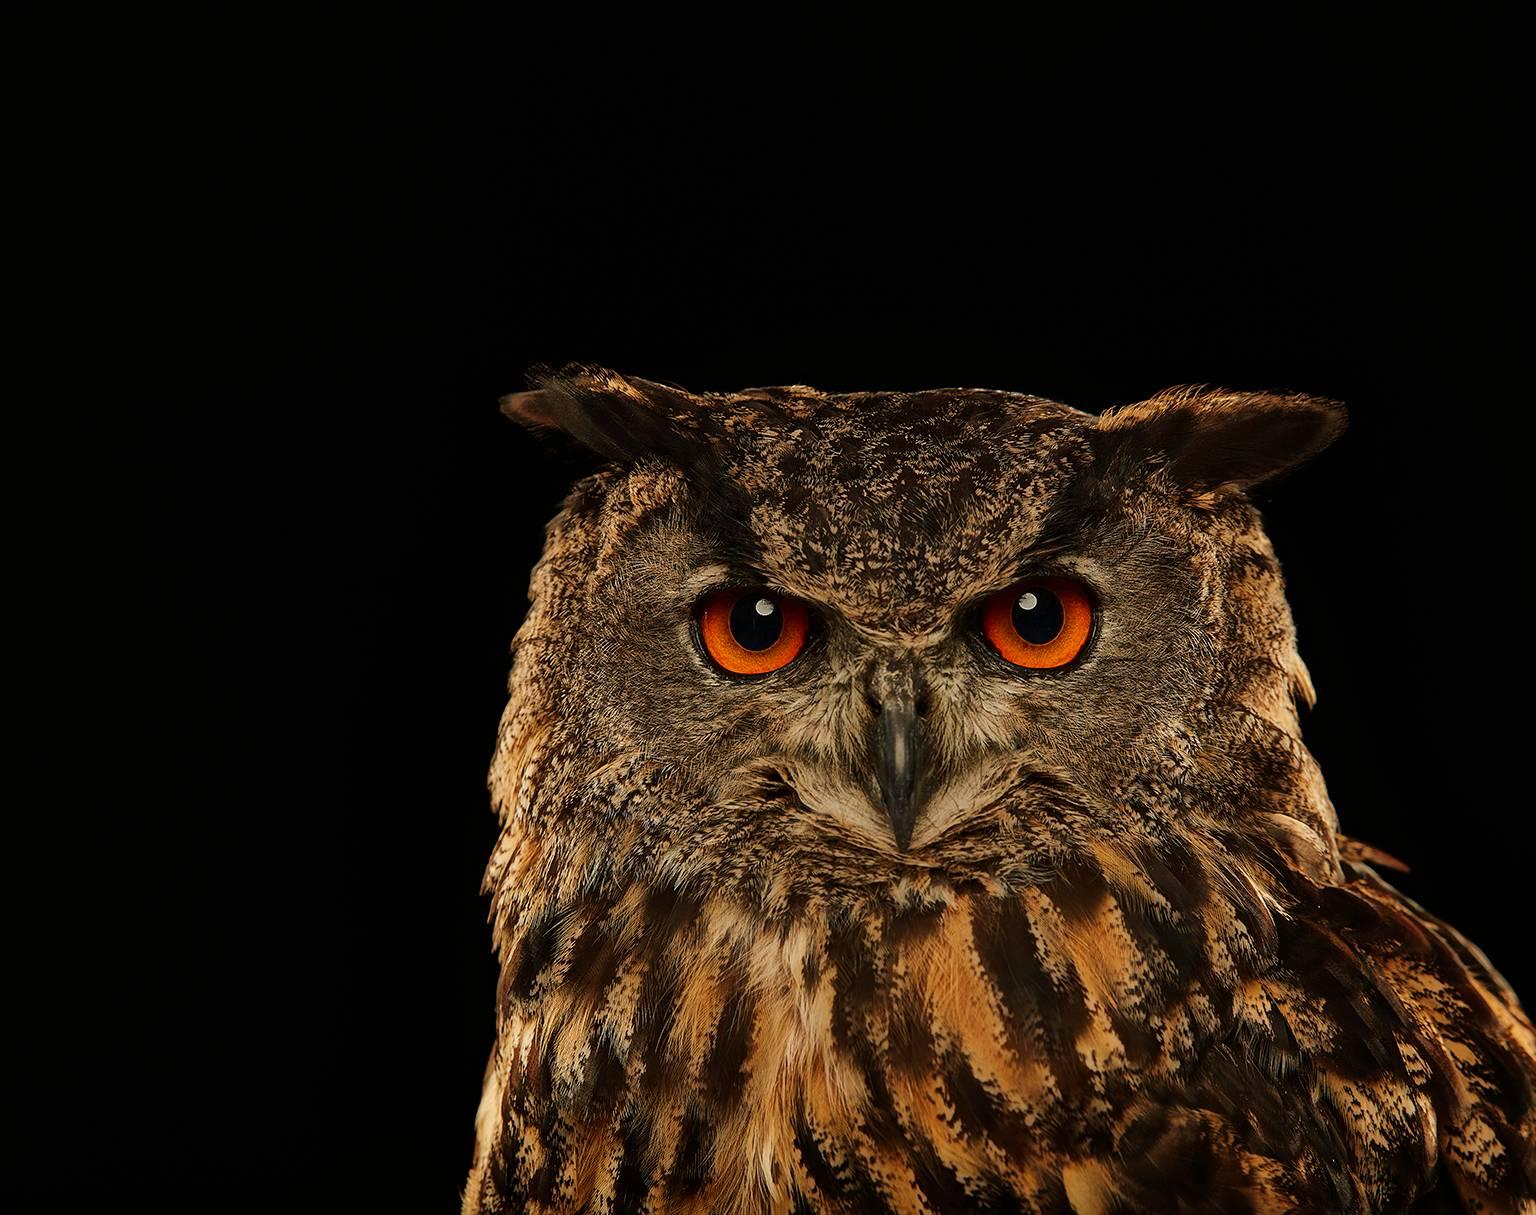 Chris Gordaneer Color Photograph - Birds of Prey - Eurasian Eagle Owl No. 13